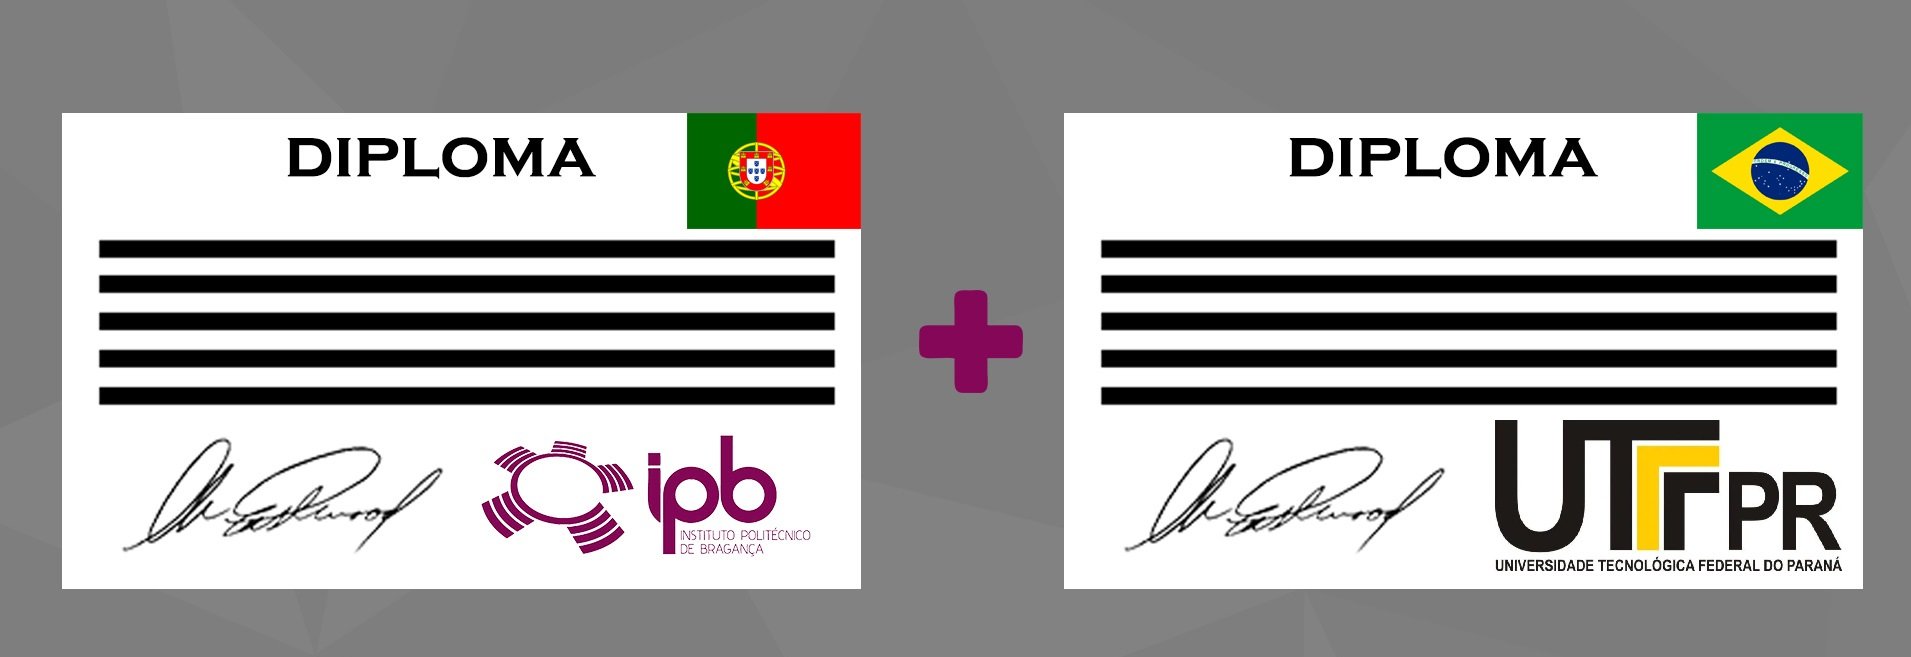 Dois diplomas, um do IPB de Portugal e outro da UTFPR do Brasil